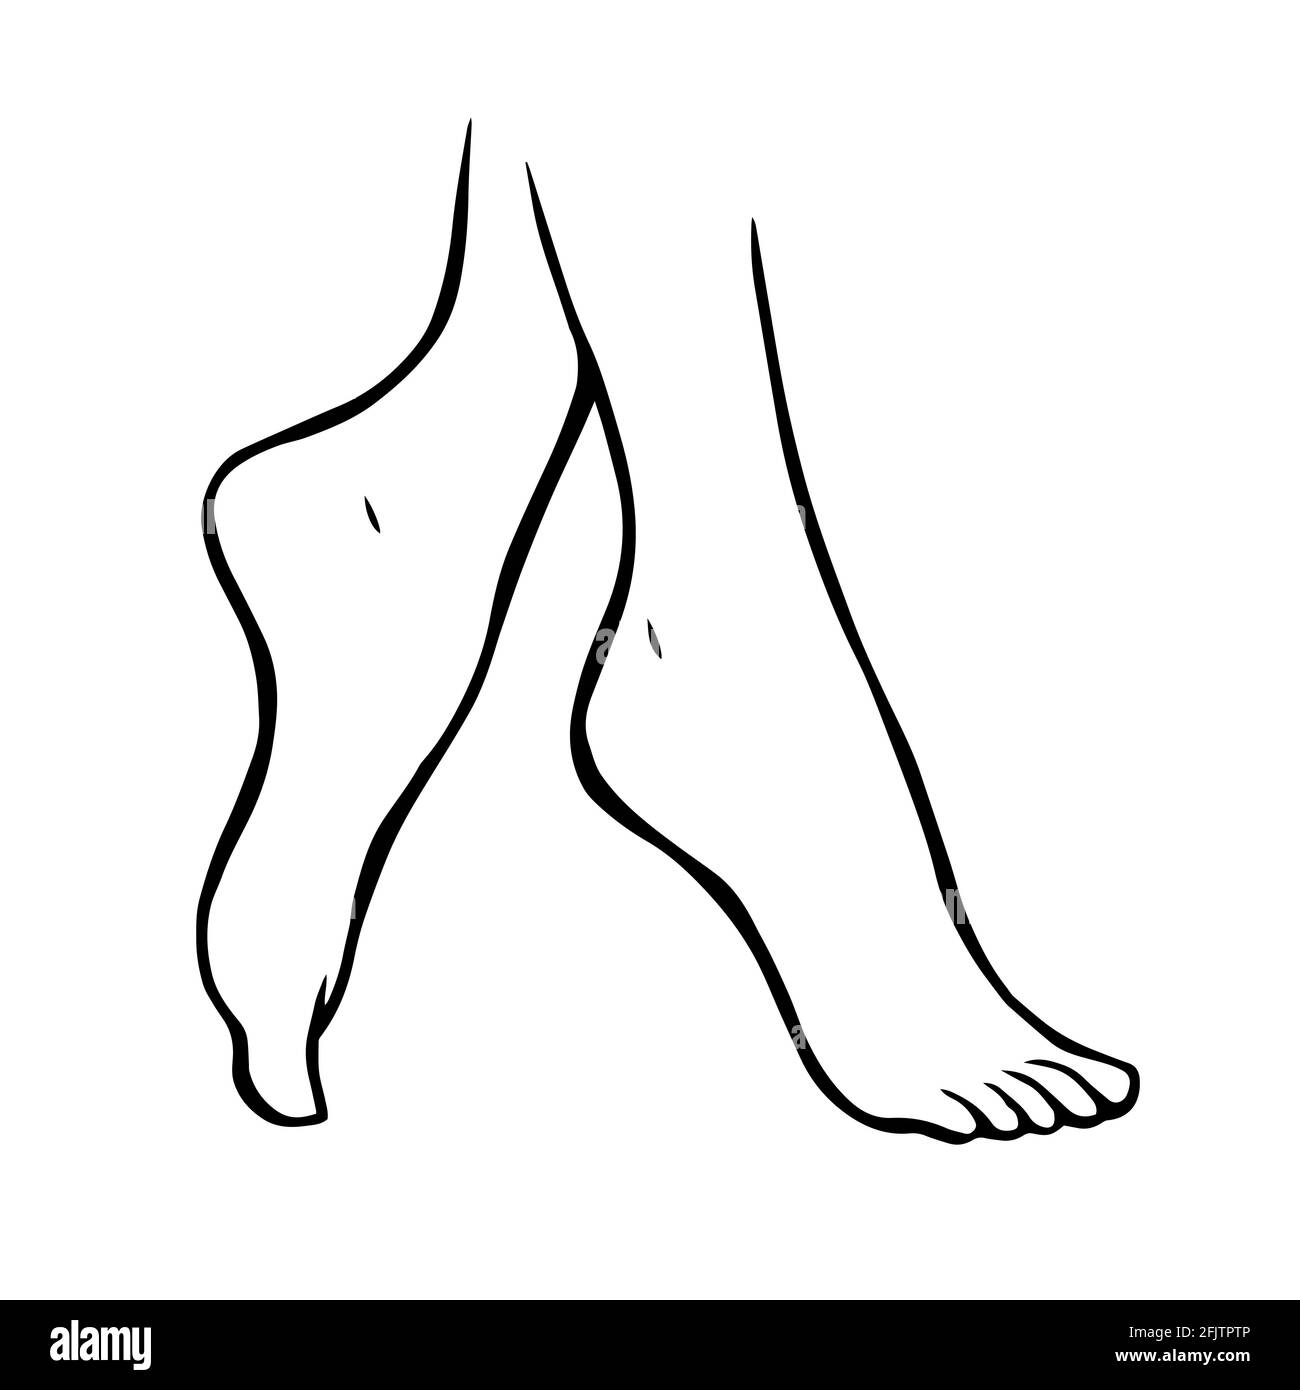 Disegno a linee delle gambe femminili su sfondo bianco. Pedicure, cura del corpo e bellezza. Illustrazione dello schizzo isolato dal vettore Illustrazione Vettoriale